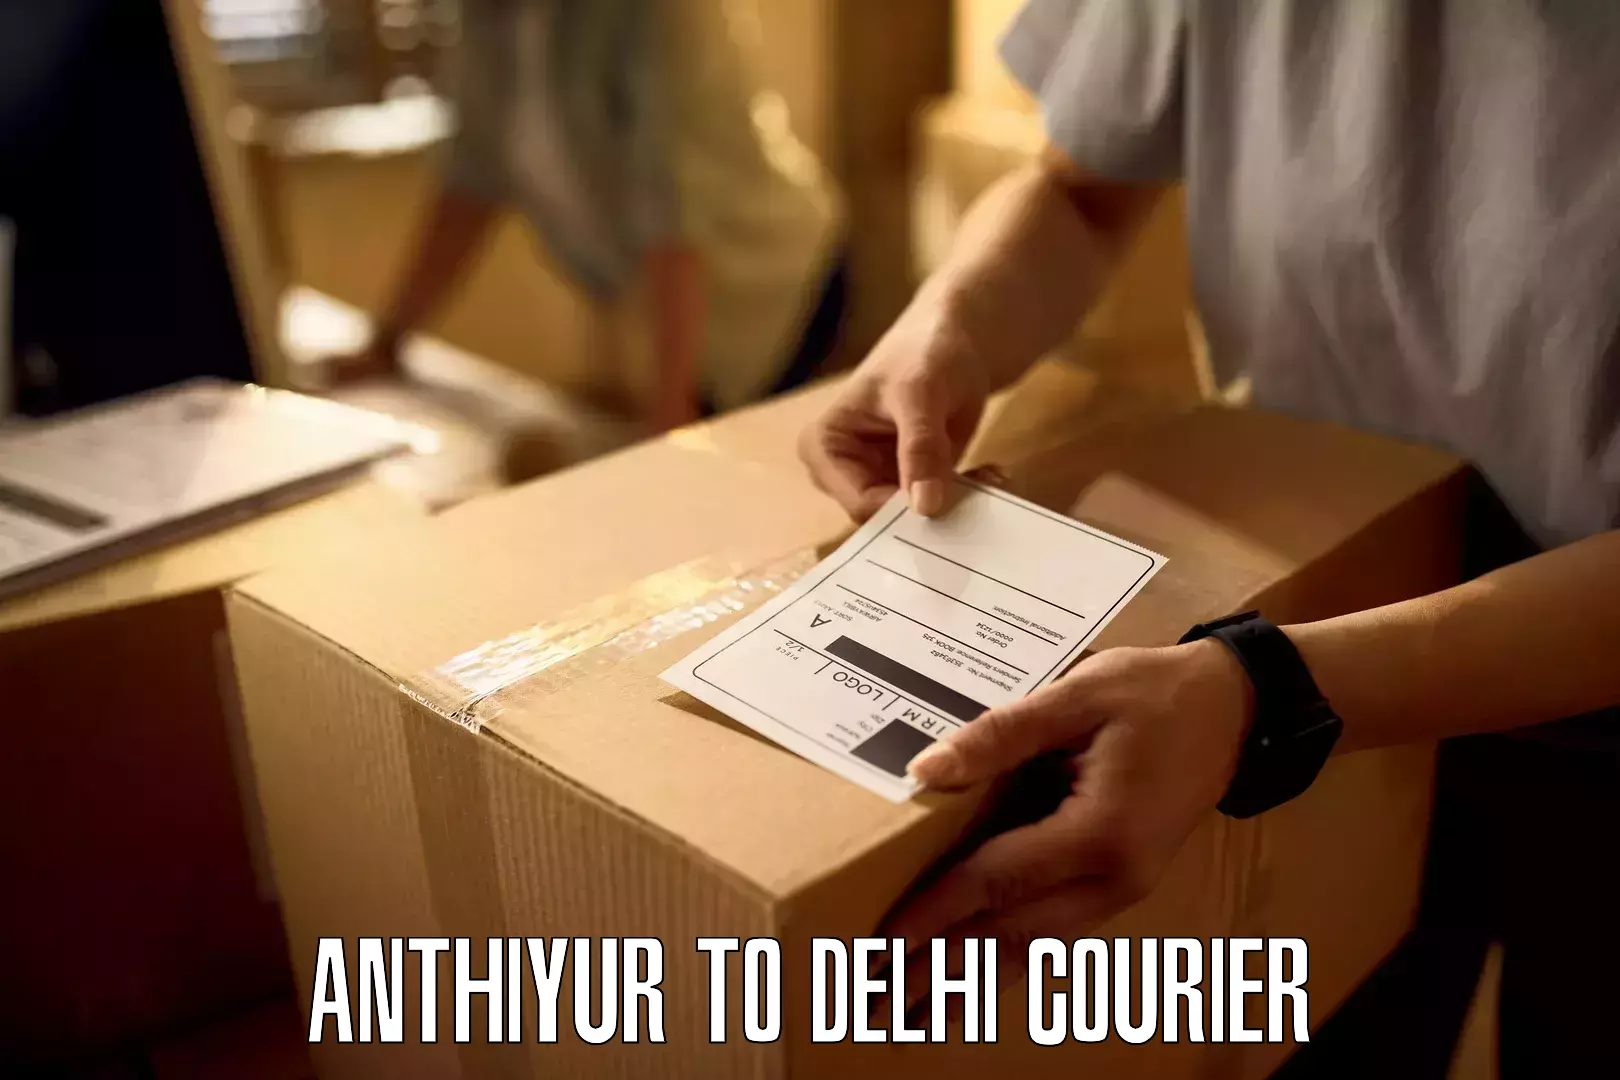 Courier service partnerships Anthiyur to Jamia Millia Islamia New Delhi